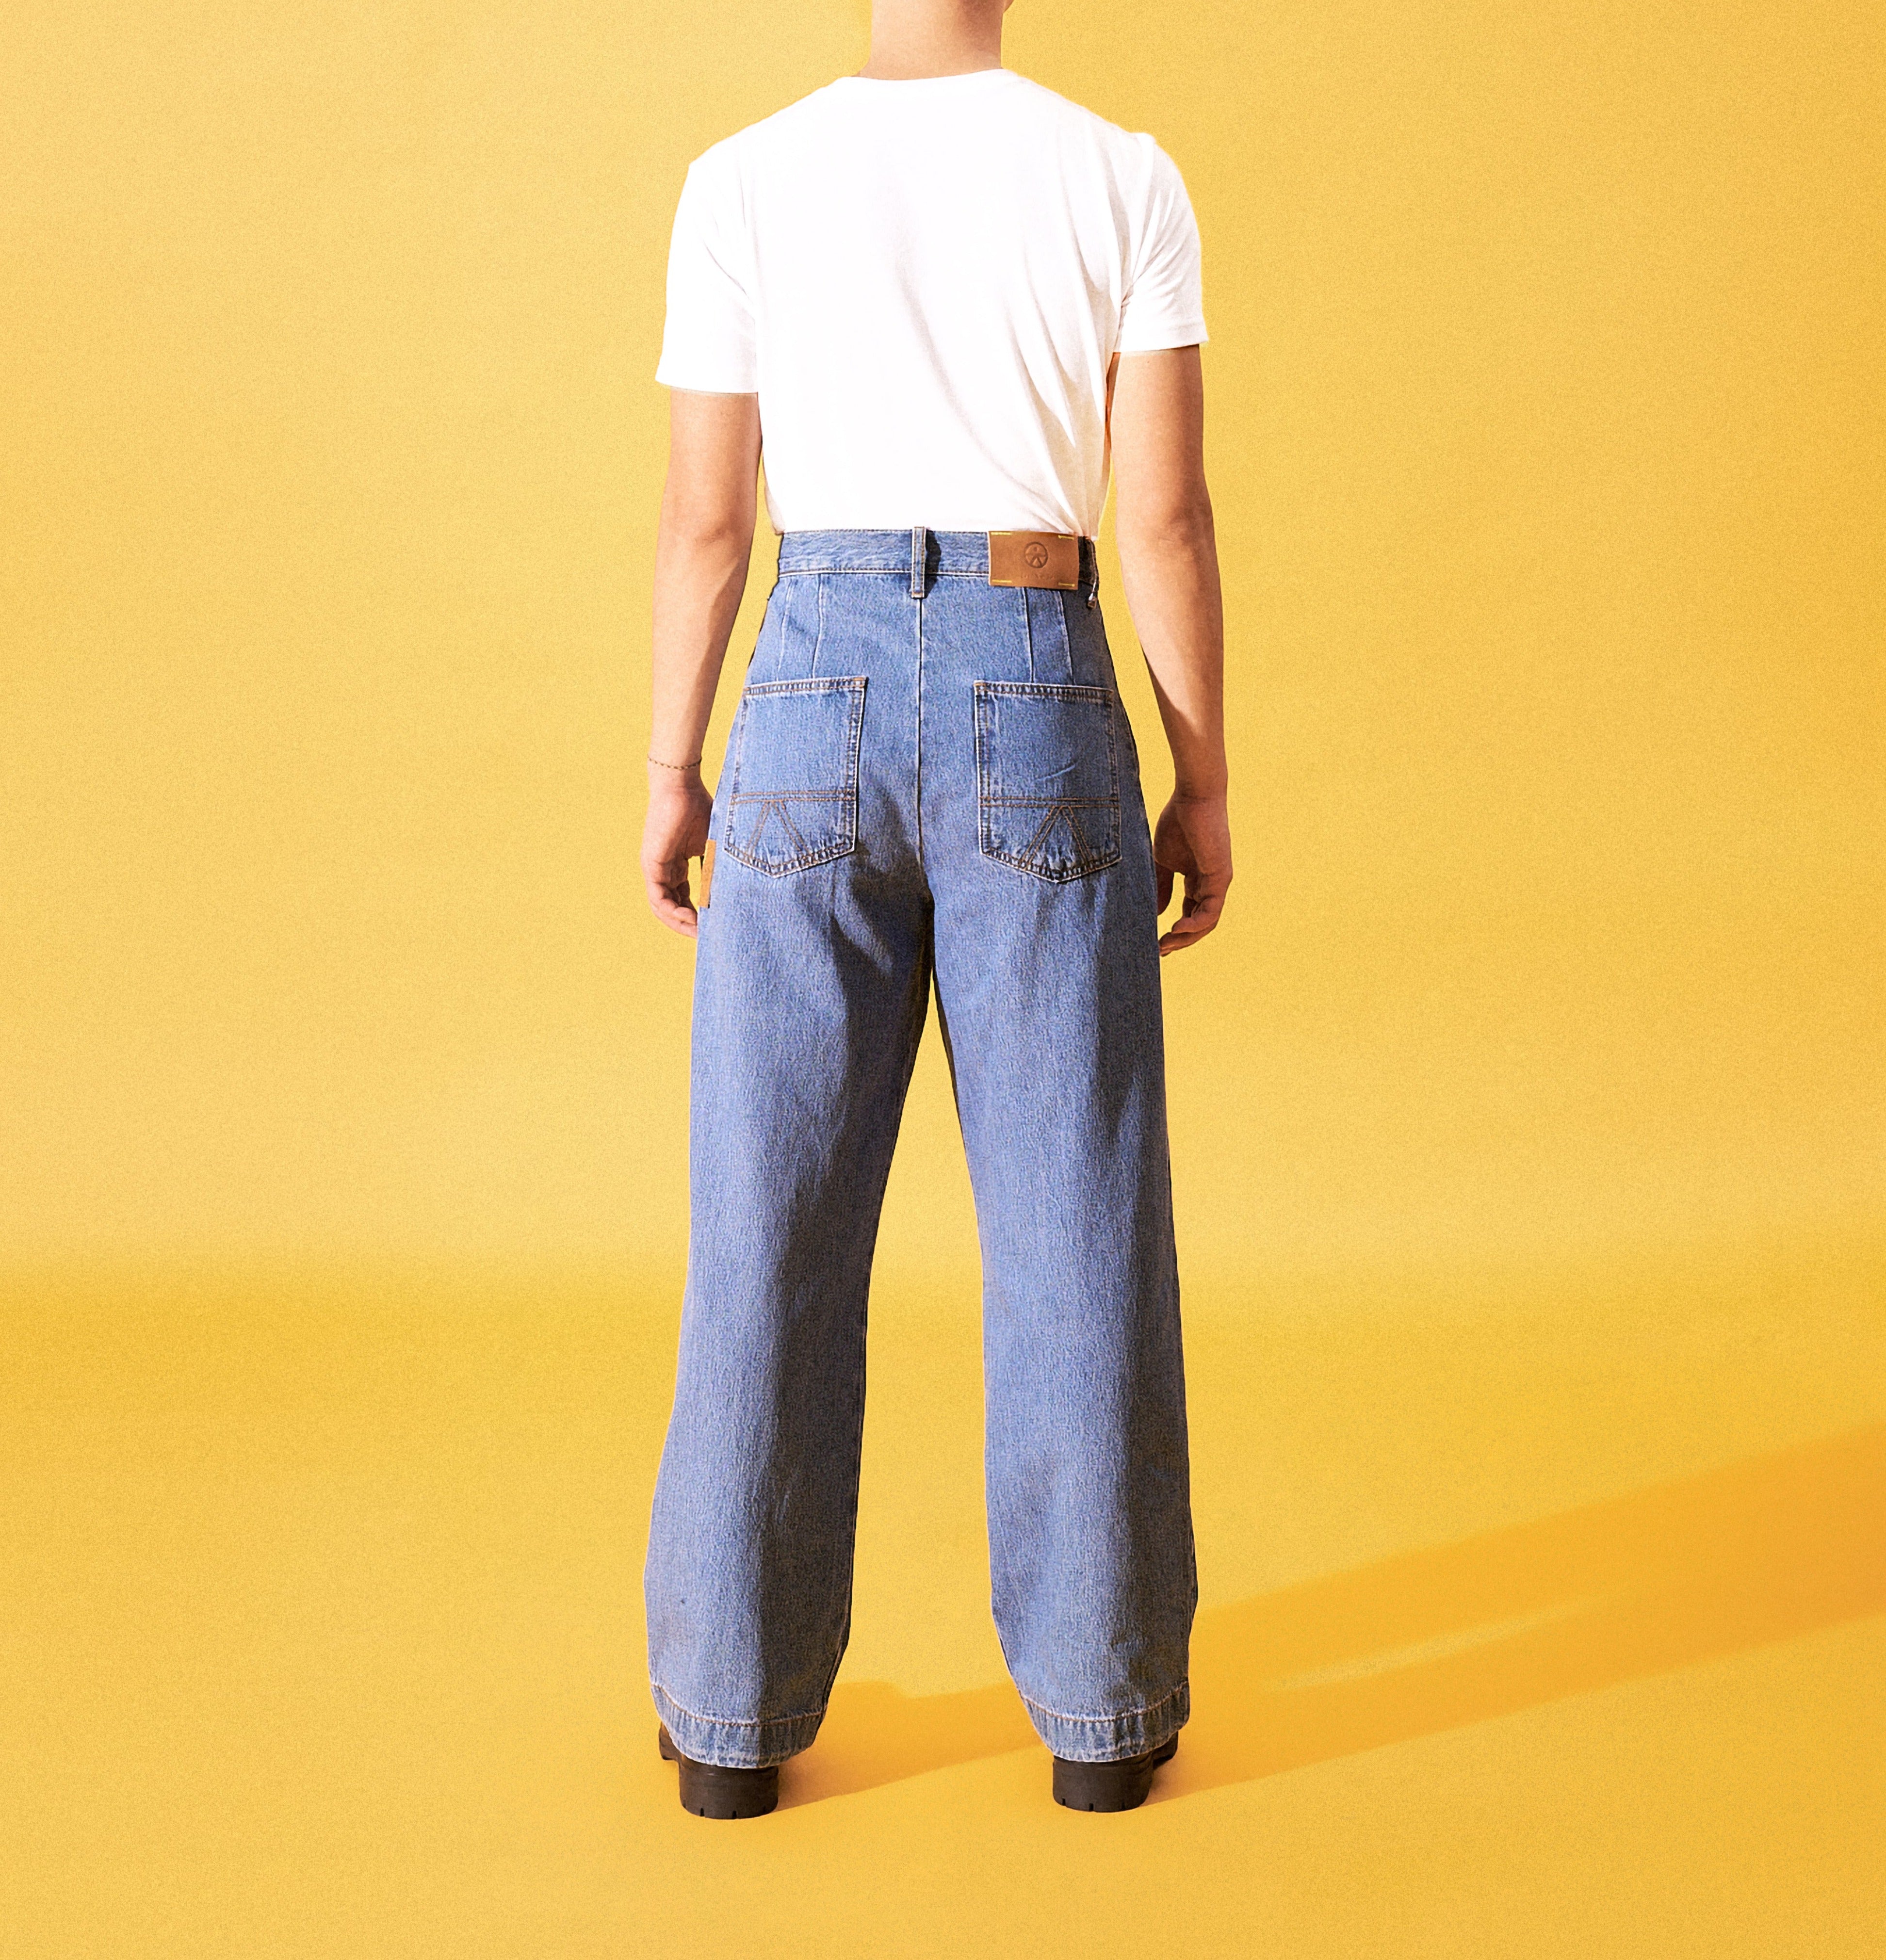 限定販売店舗 ohotoro 2023ss New Berlin Jeans - パンツ